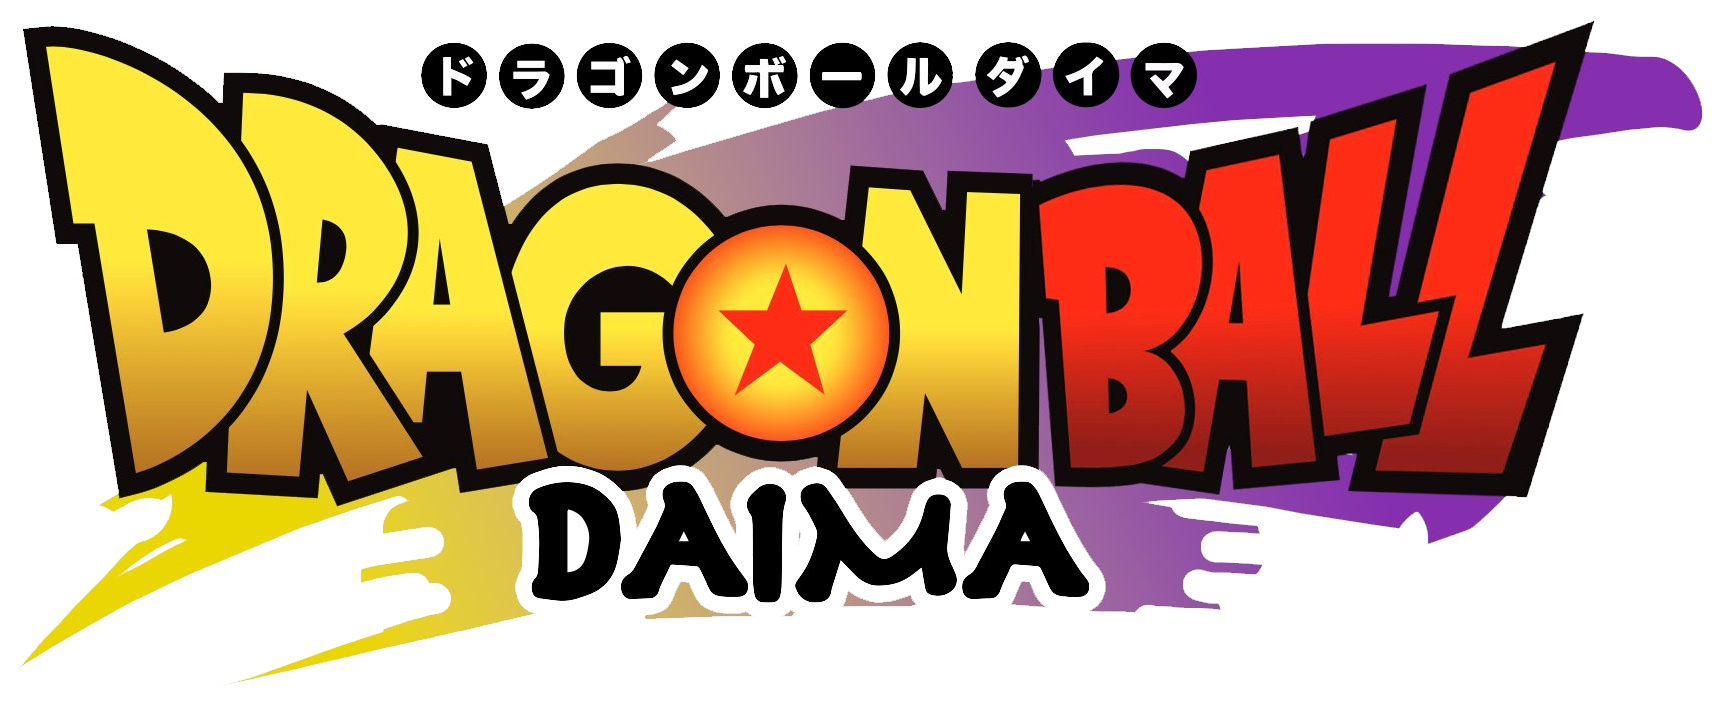 Dragon Ball DAIMA” Teaser Trailer